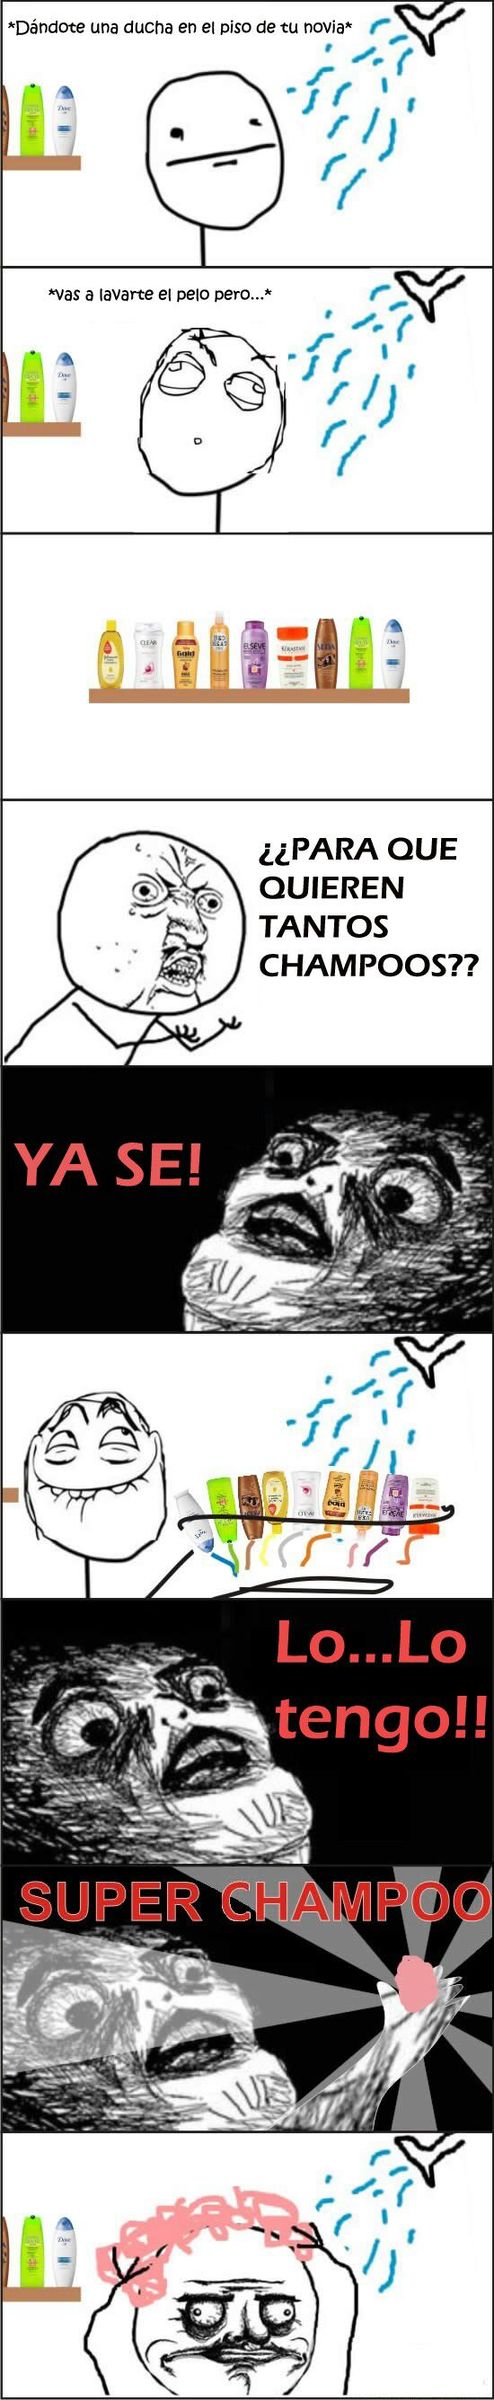 super shampoo! jeje - meme